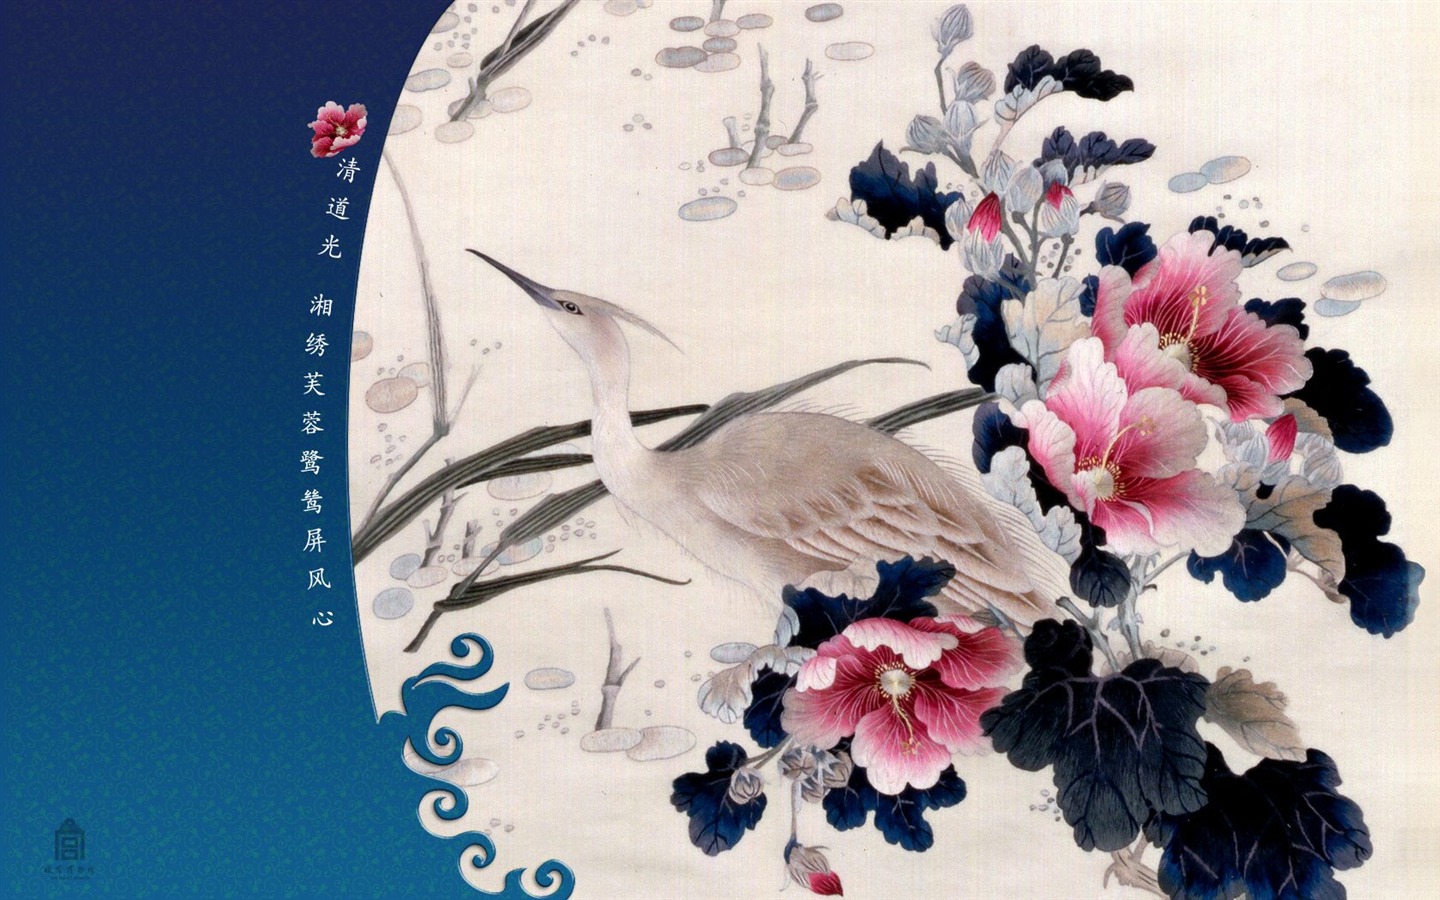 北京故宮博物院 文物展壁紙(二) #23 - 1440x900